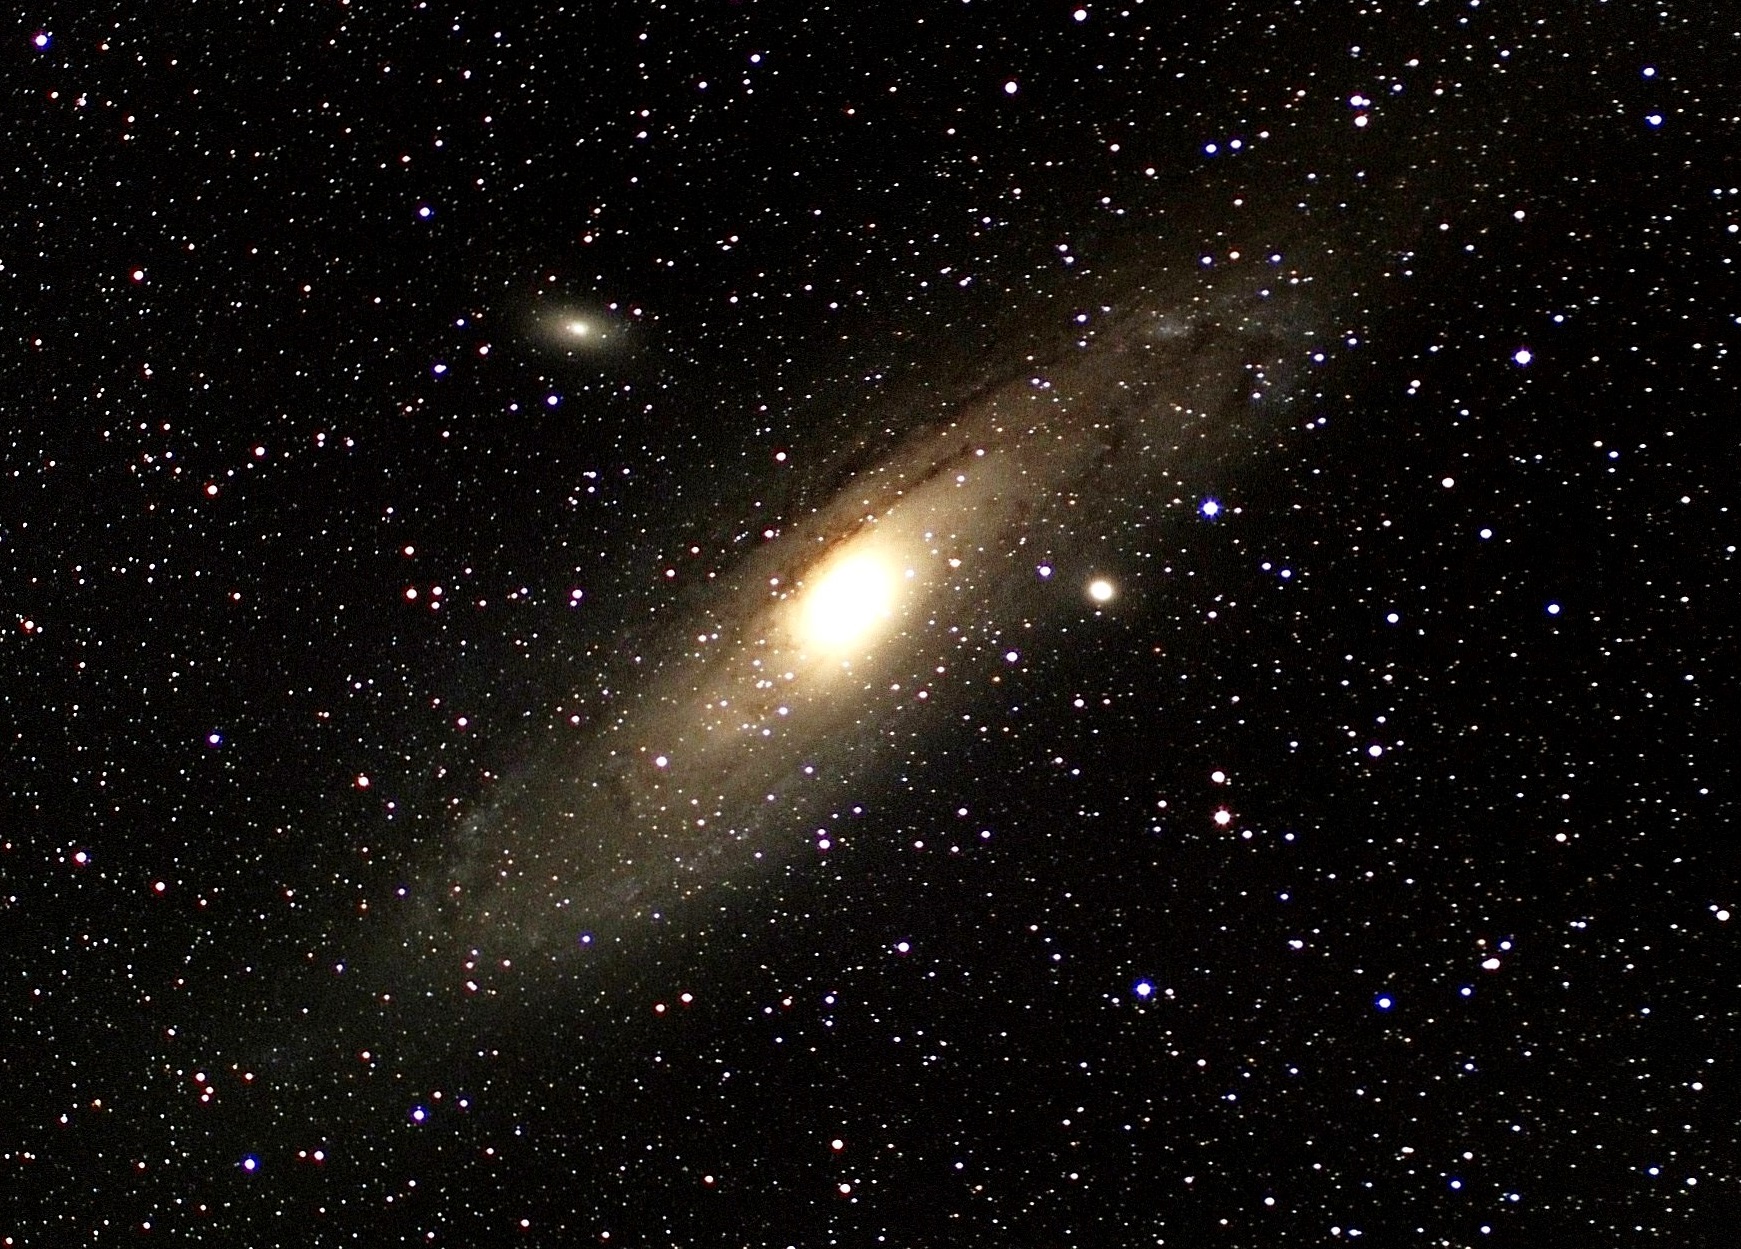 アンドロメダ銀河(M31)